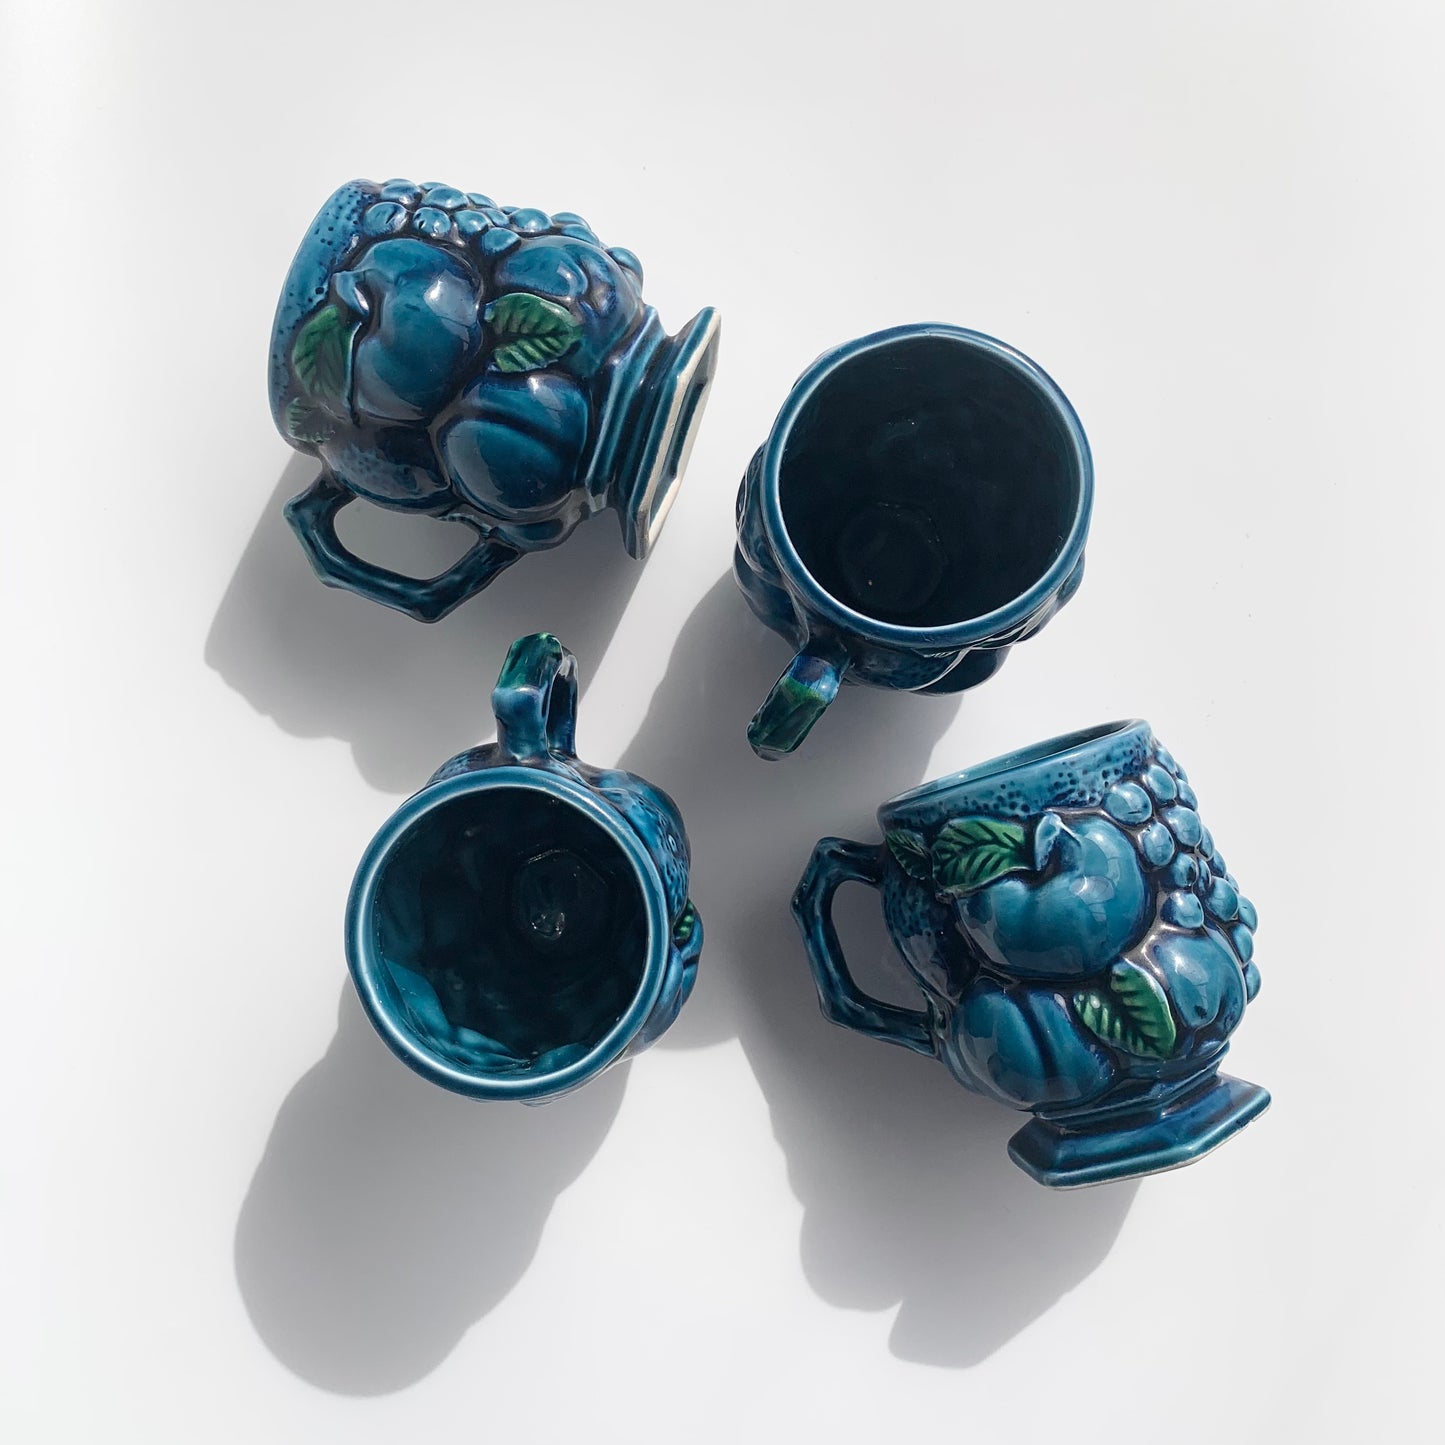 Blue Fruit Mugs